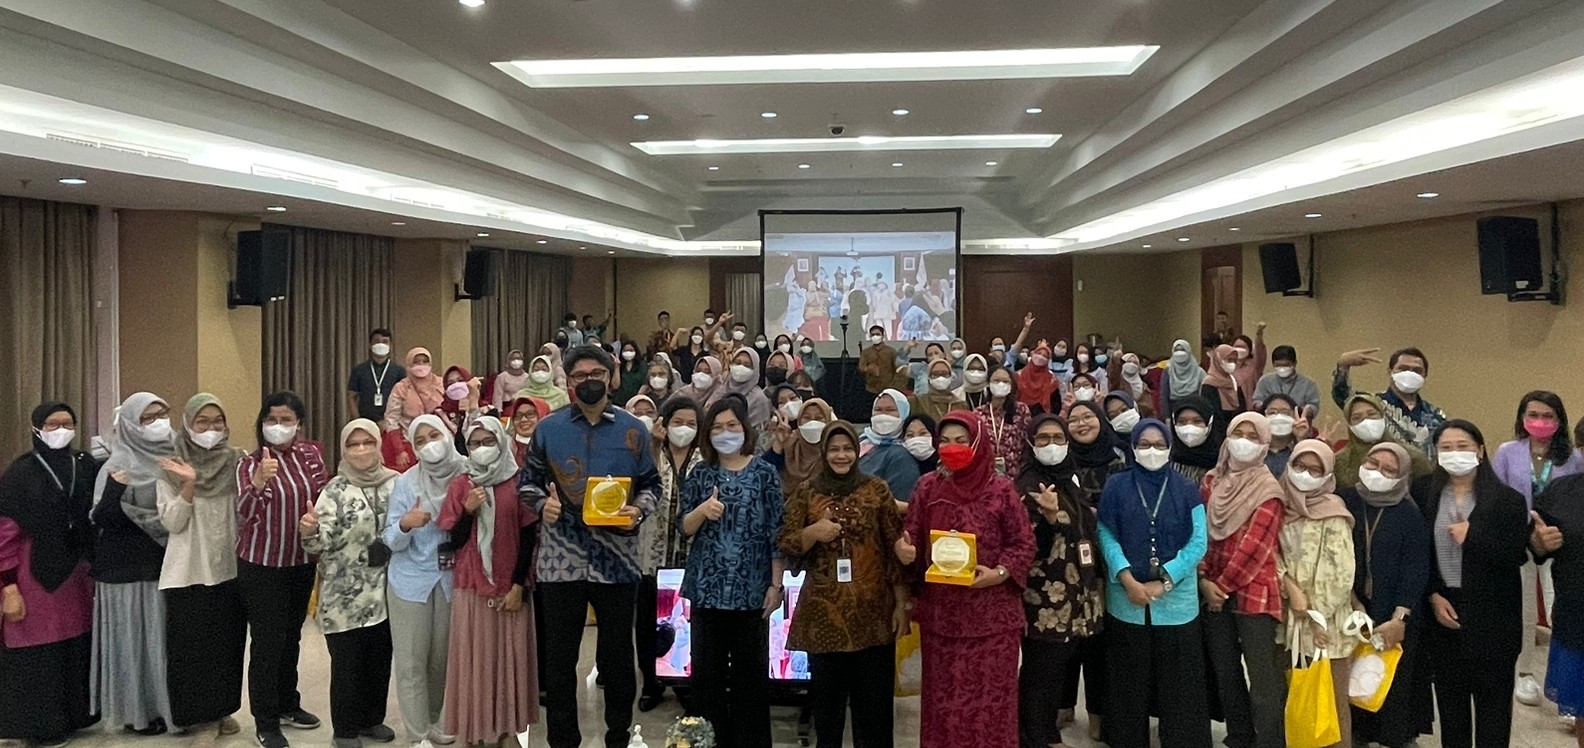 PT. Morula Indonesia Gelar Seminar Awam Pengobatan Kanker Serviks agar Tidak Berpengaruh pada Kesuburan